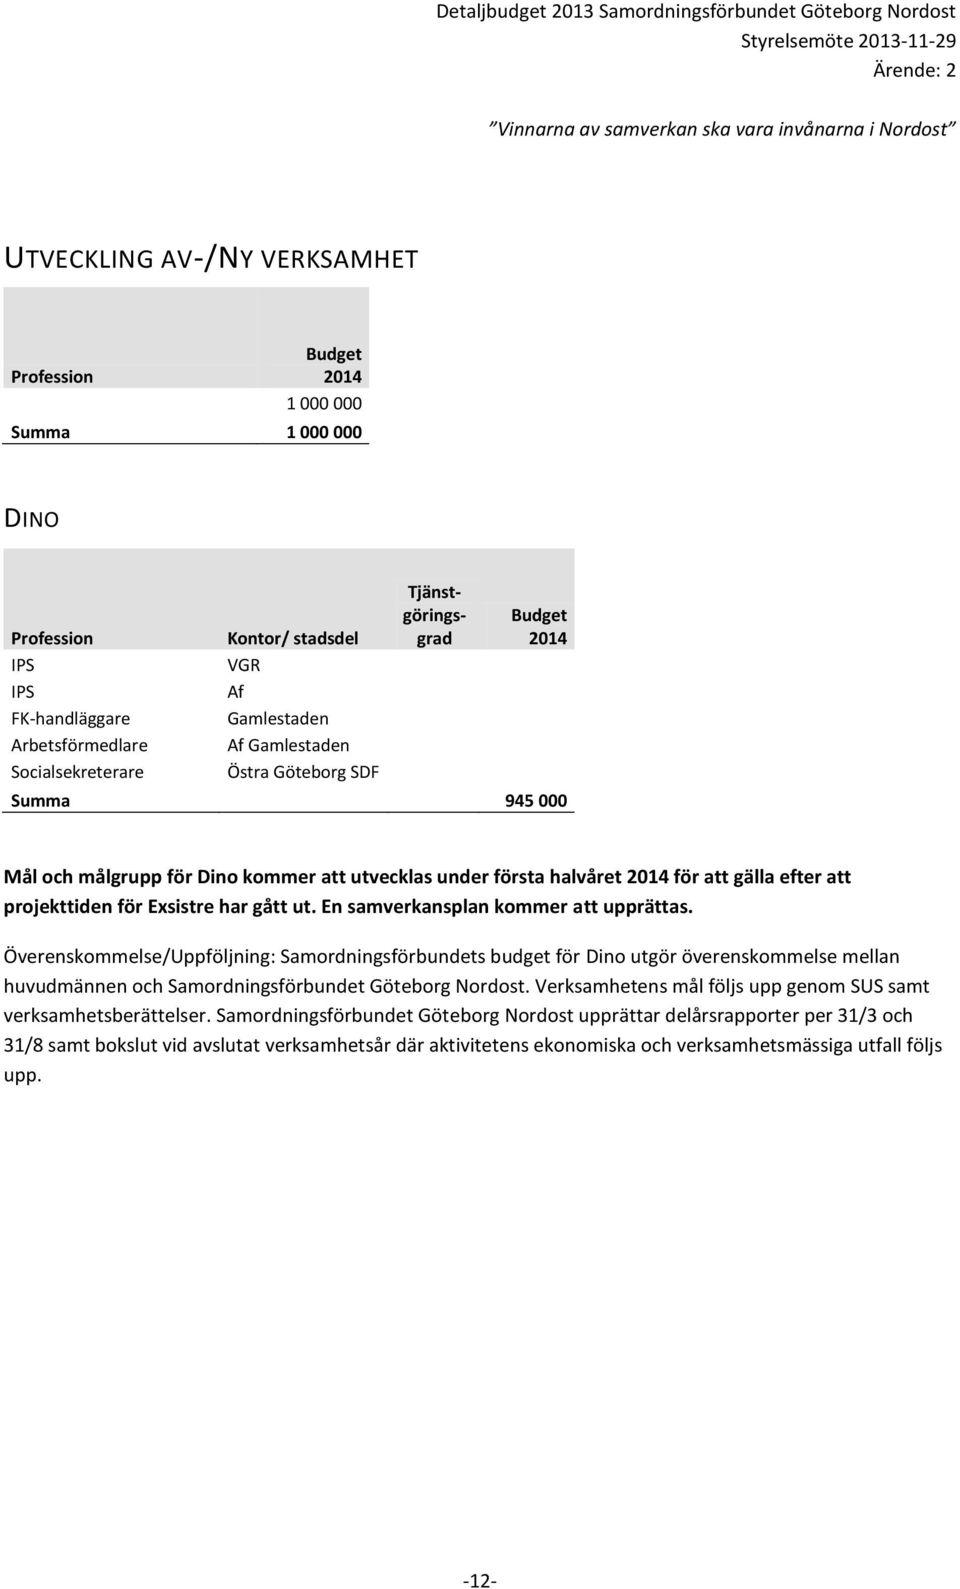 Överenskommelse/Uppföljning: Samordningsförbundets budget för Dino utgör överenskommelse mellan huvudmännen och Samordningsförbundet Göteborg Nordost.